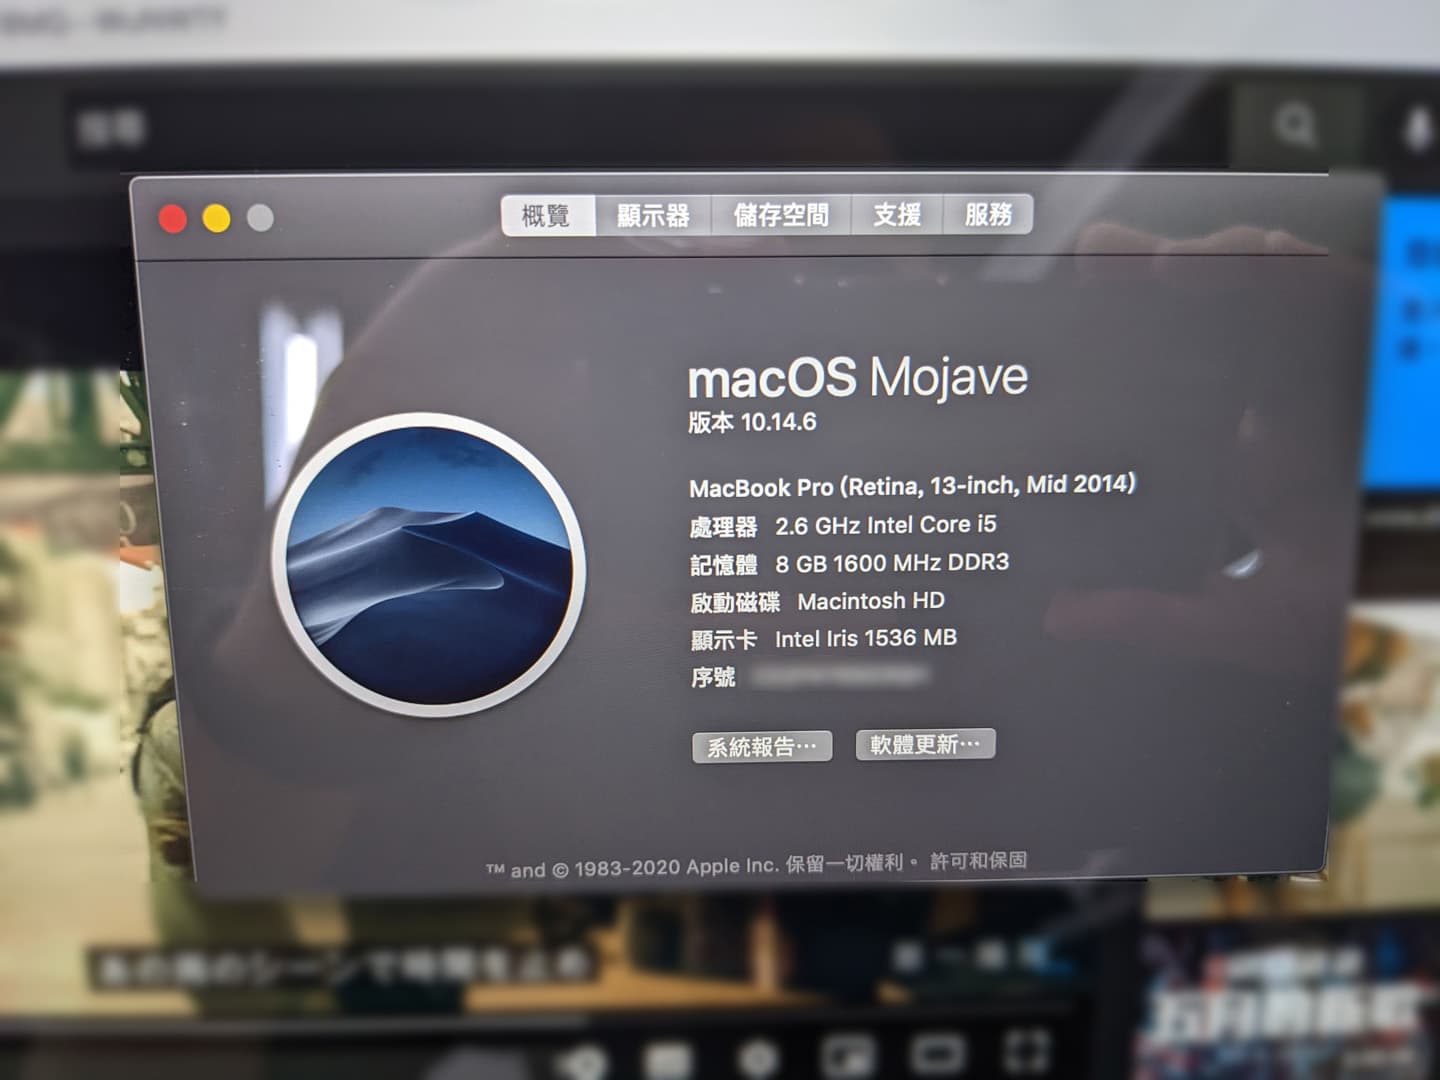 [3C]Macbook Pro 如何更換SSD硬碟? Macbook Pro 2015更換SSD-美光 Micron Crucial P2 1000GB